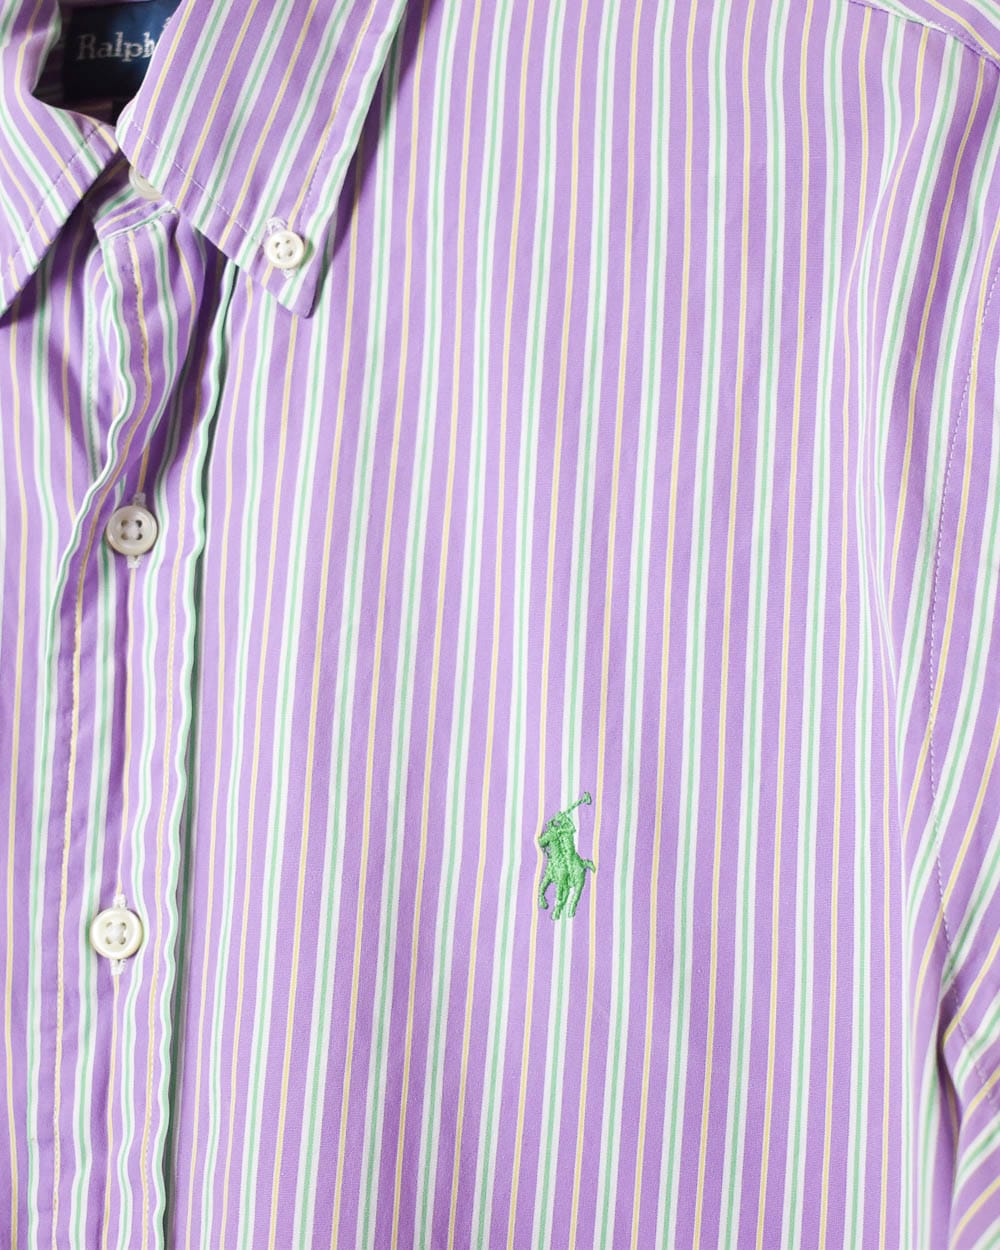 Pink Polo Ralph Lauren Striped Shirt - Medium